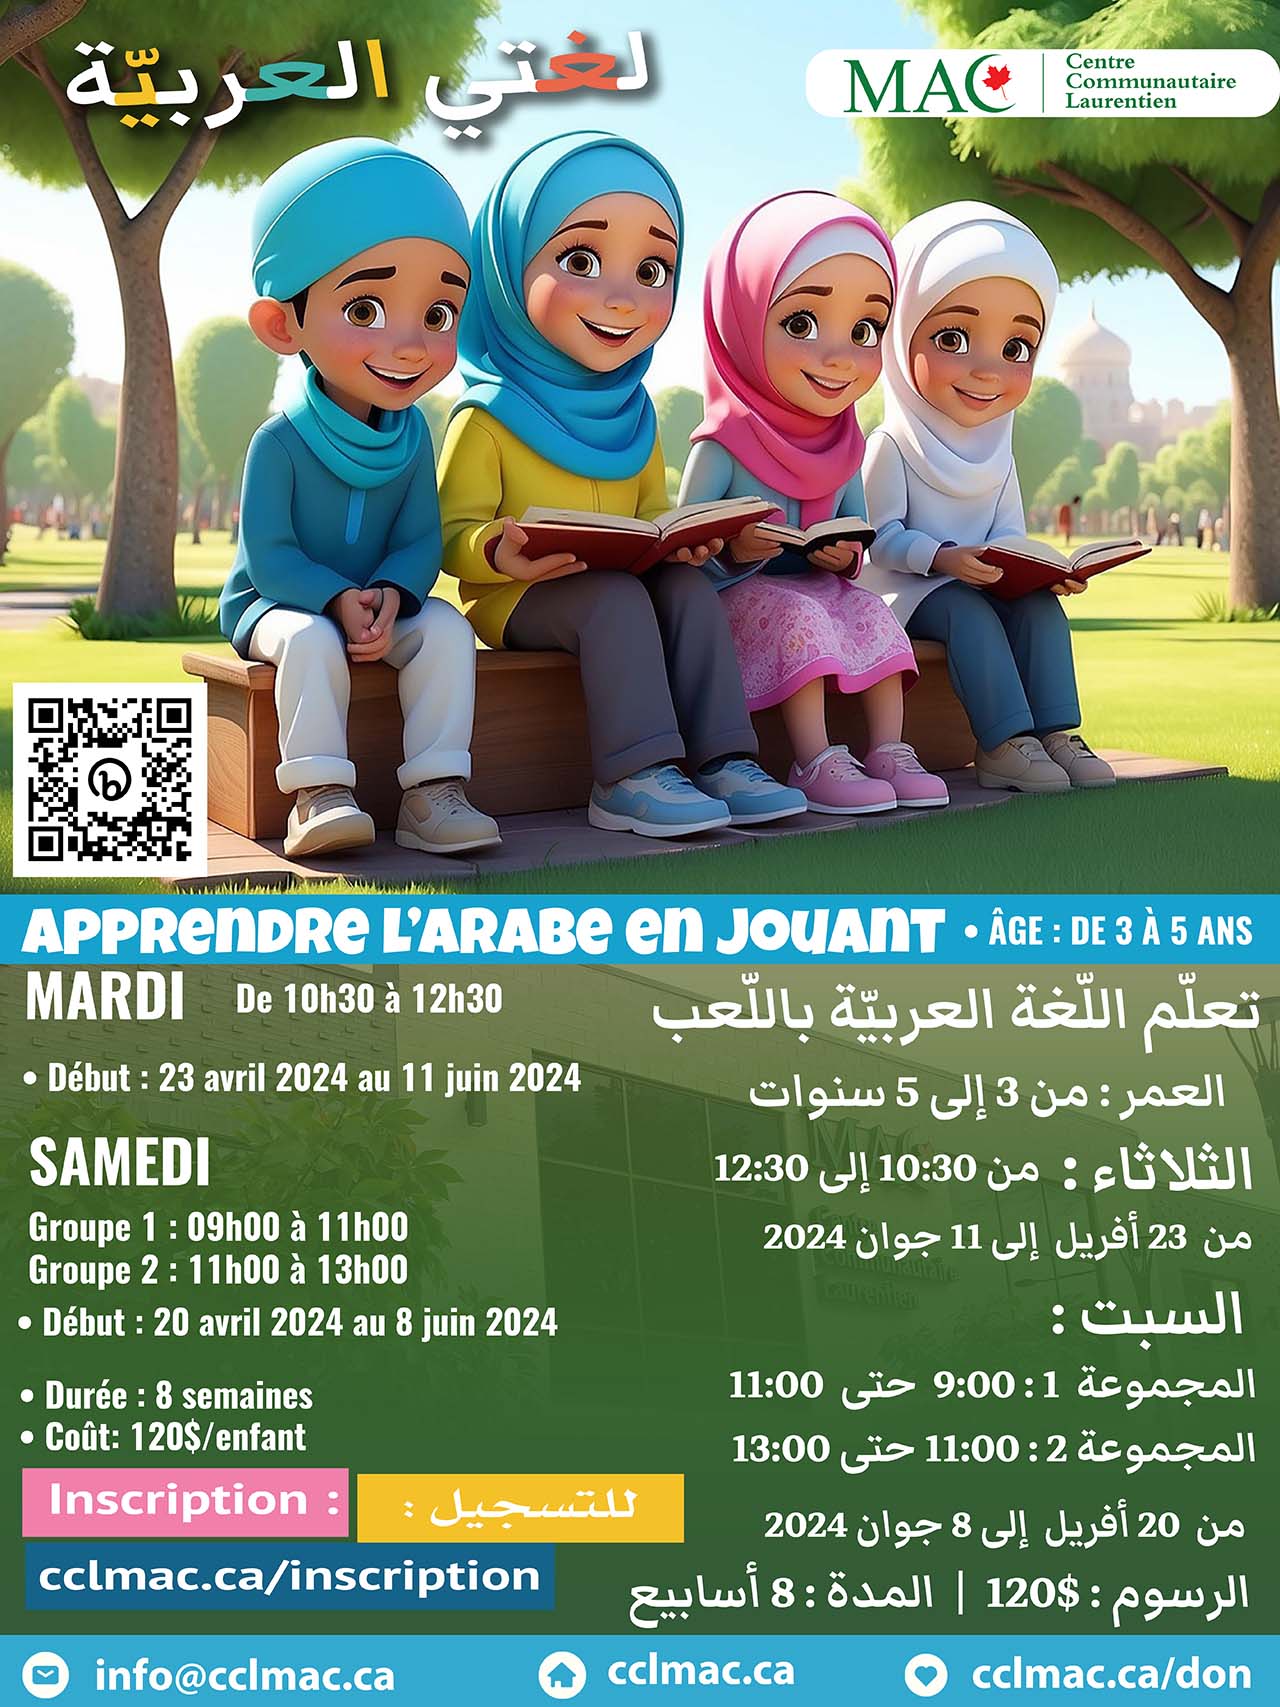 Apprendre la langue arabe tout en s'amusant - Session printemps 2024